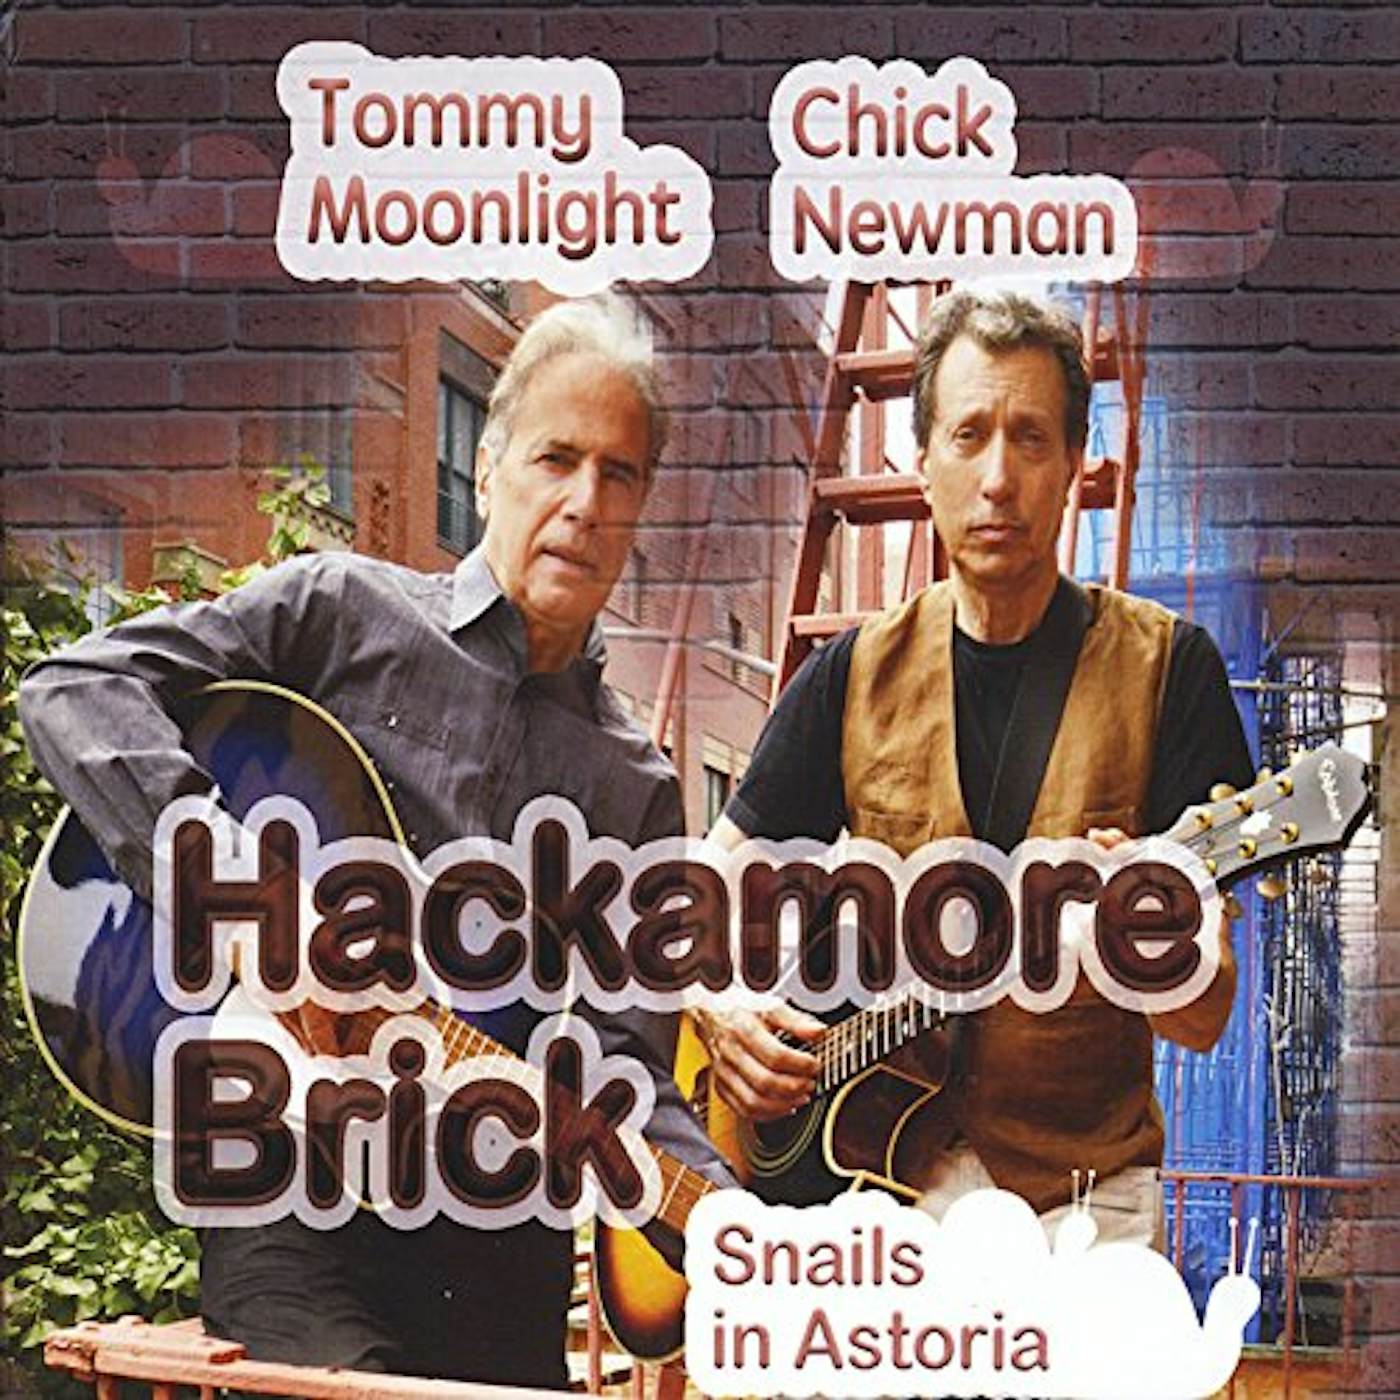 Hackamore Brick SNAILS IN ASTORIA CD